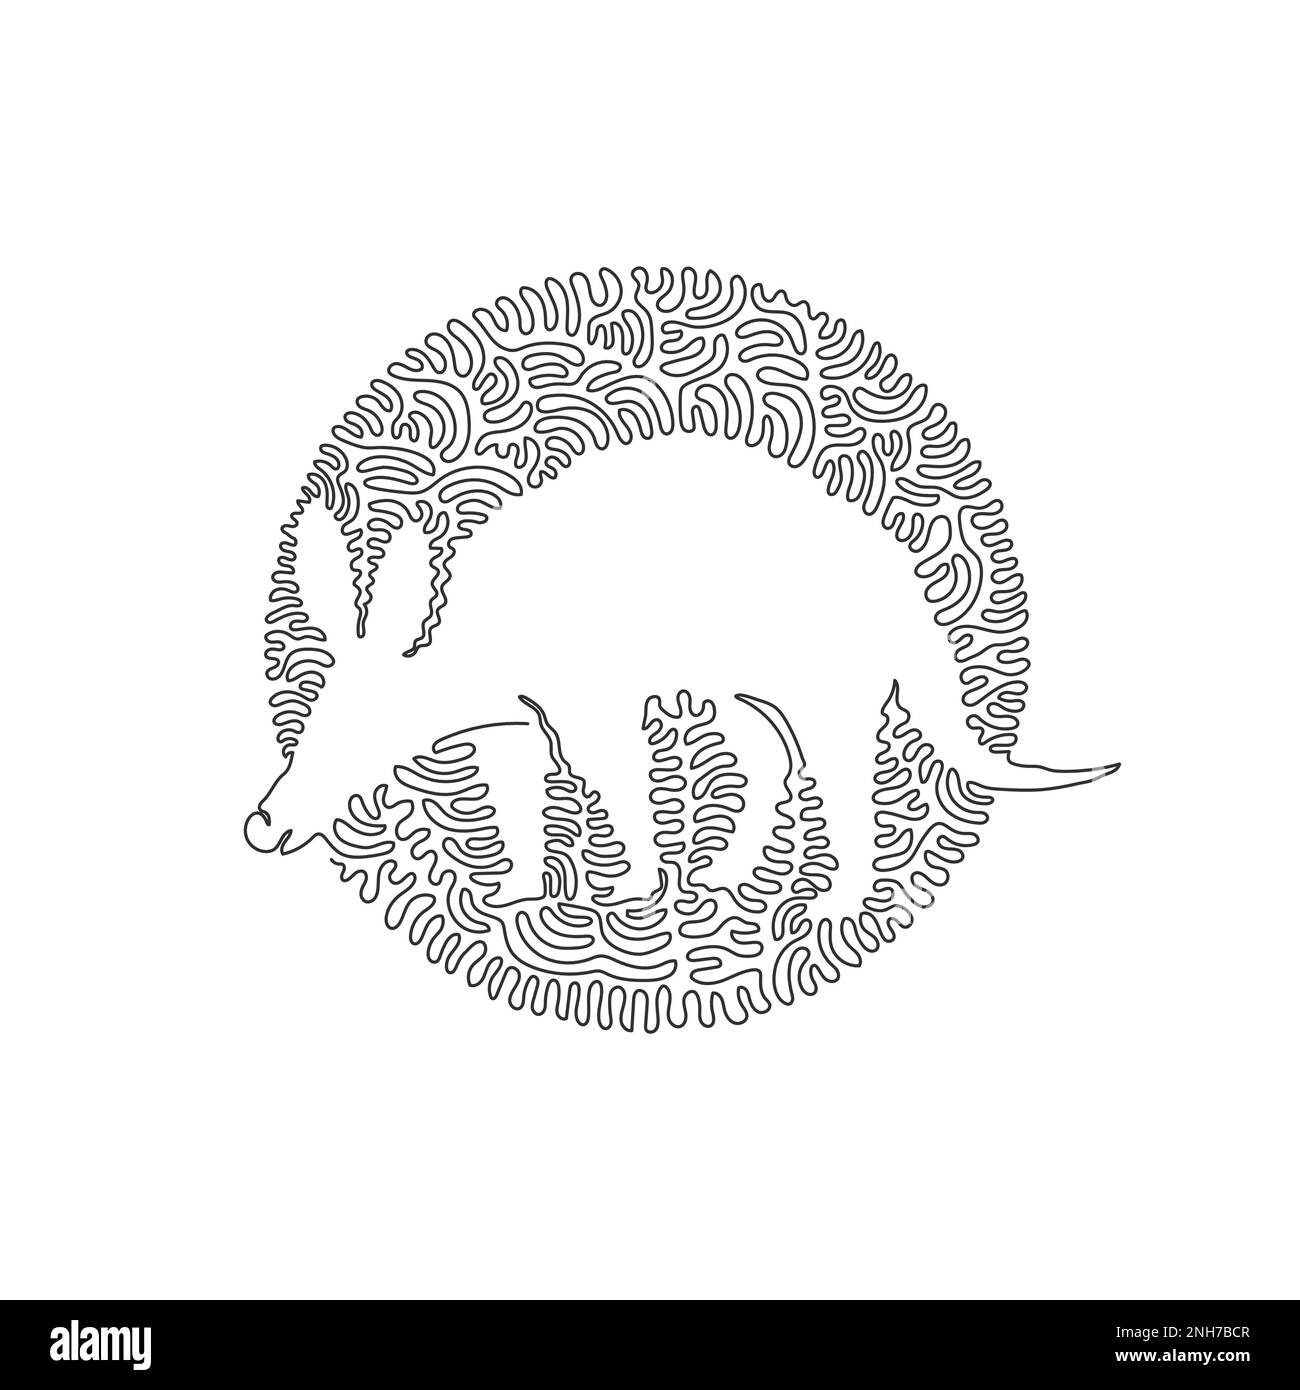 Dessin continu d'une ligne de l'art abstrait Aardvark debout Illustration vectorielle modifiable à une seule ligne de digesteurs qualifiés aardvark Illustration de Vecteur